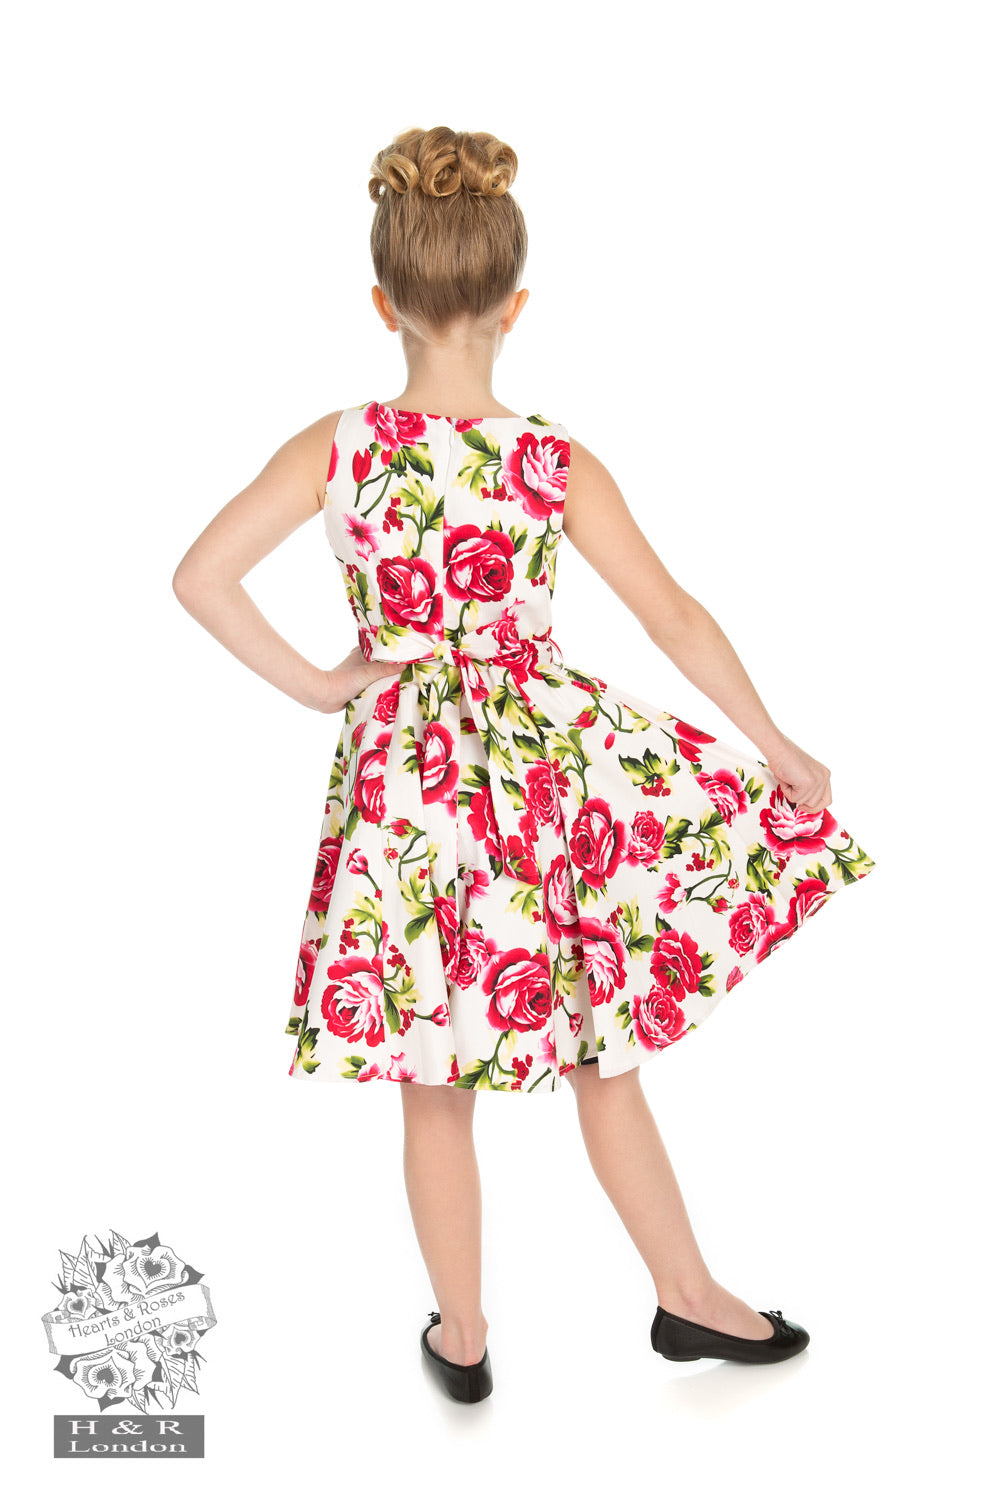 Girls Sweet Rose Swing Dress - Isabel’s Retro & Vintage Clothing